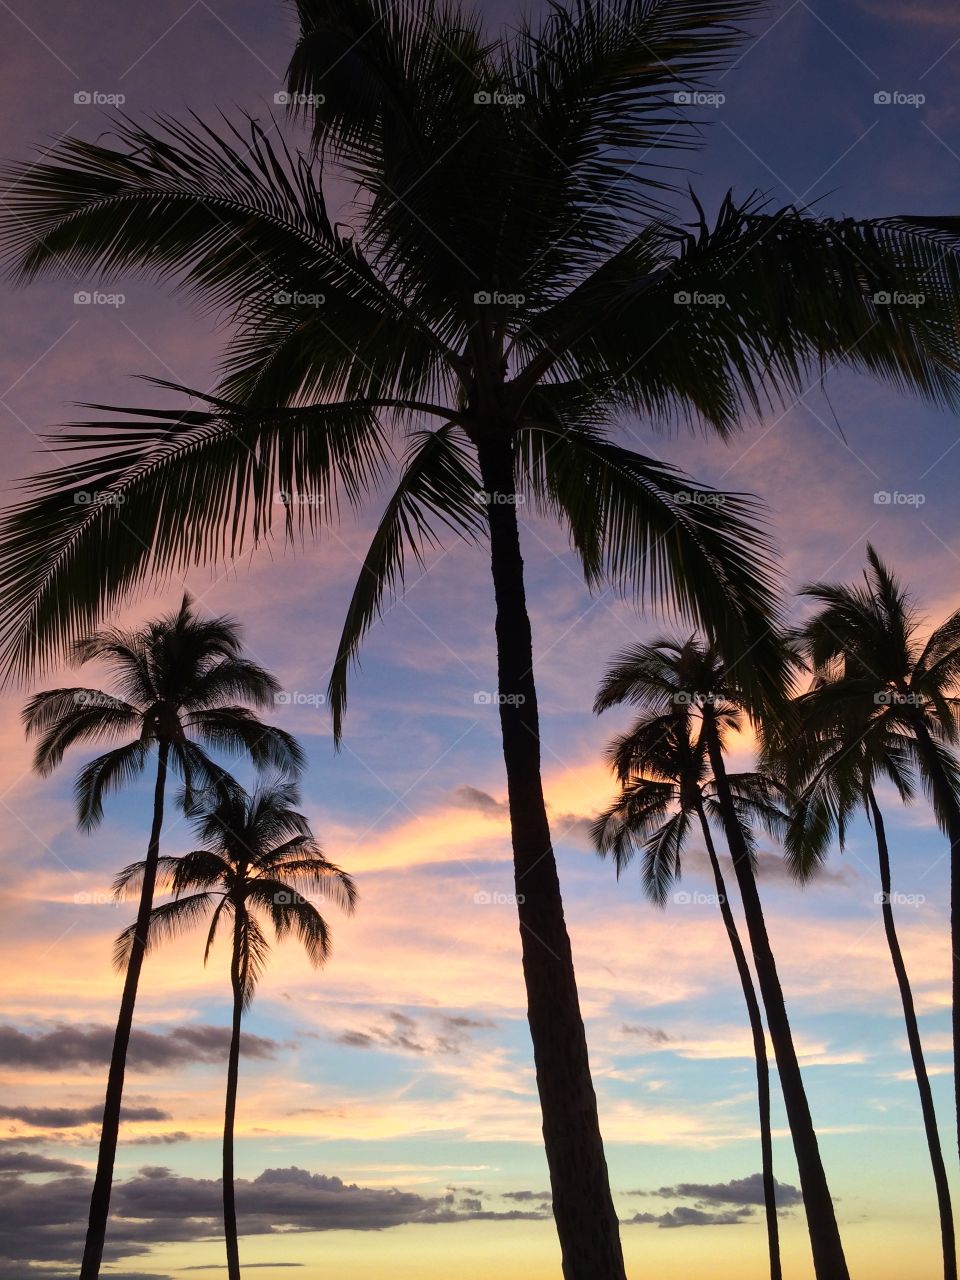 Ko Olina 2. Skies with palm trees at Ko Olina 